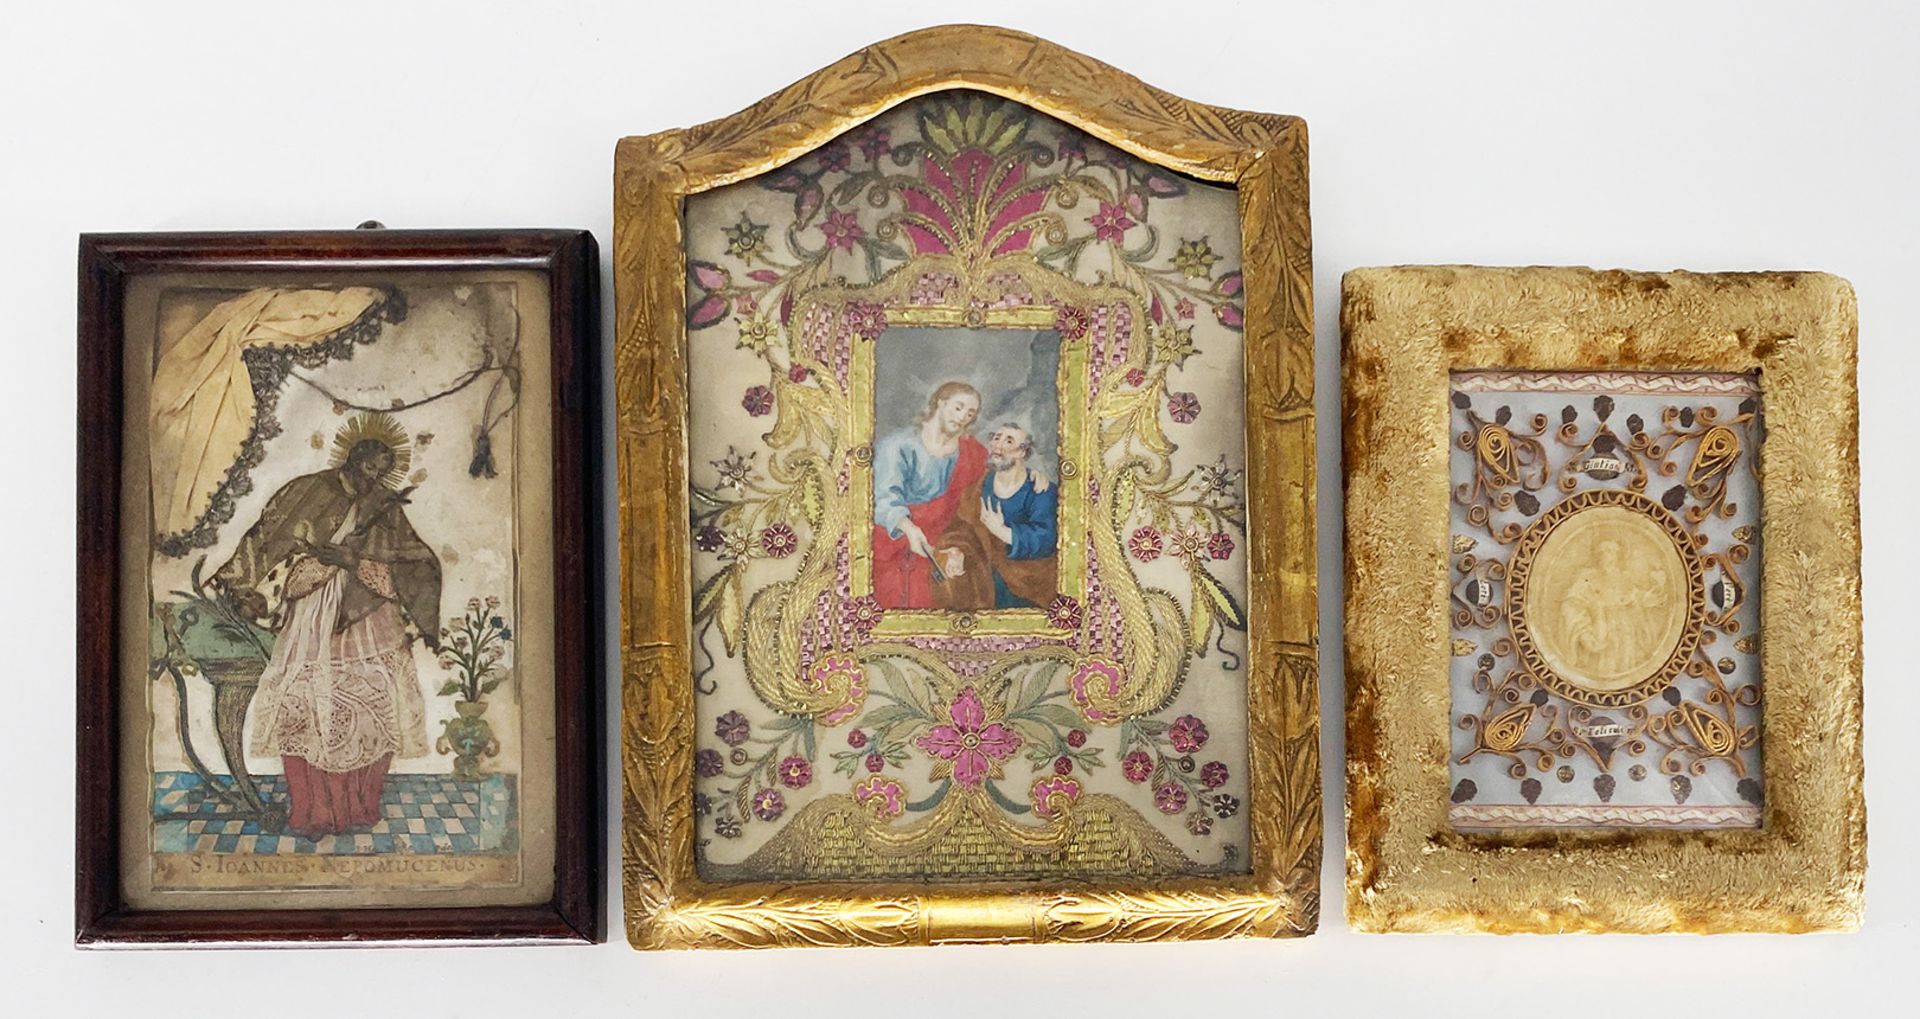 Drei Klosterarbeiten, Heiligenbilder, 18./19. Jh.: Hl. Nepomuk mit Kruzifix in der Hand, vor einem